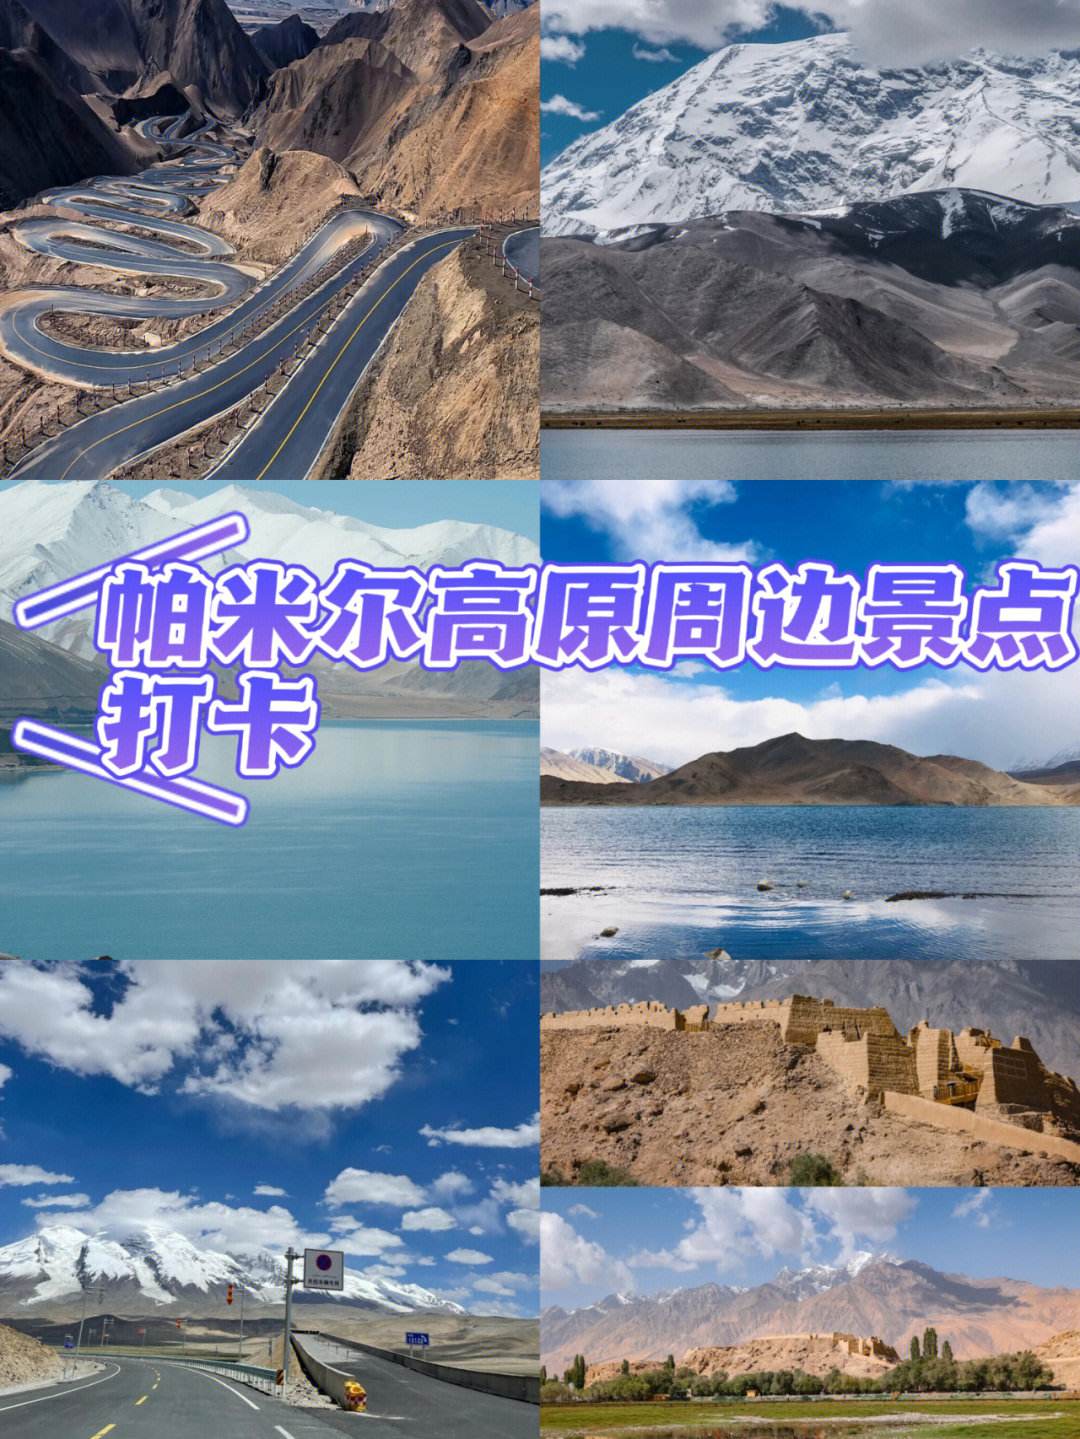 新疆丝路资讯官网下载手机版下载新丝路传说在官方下载哪一个